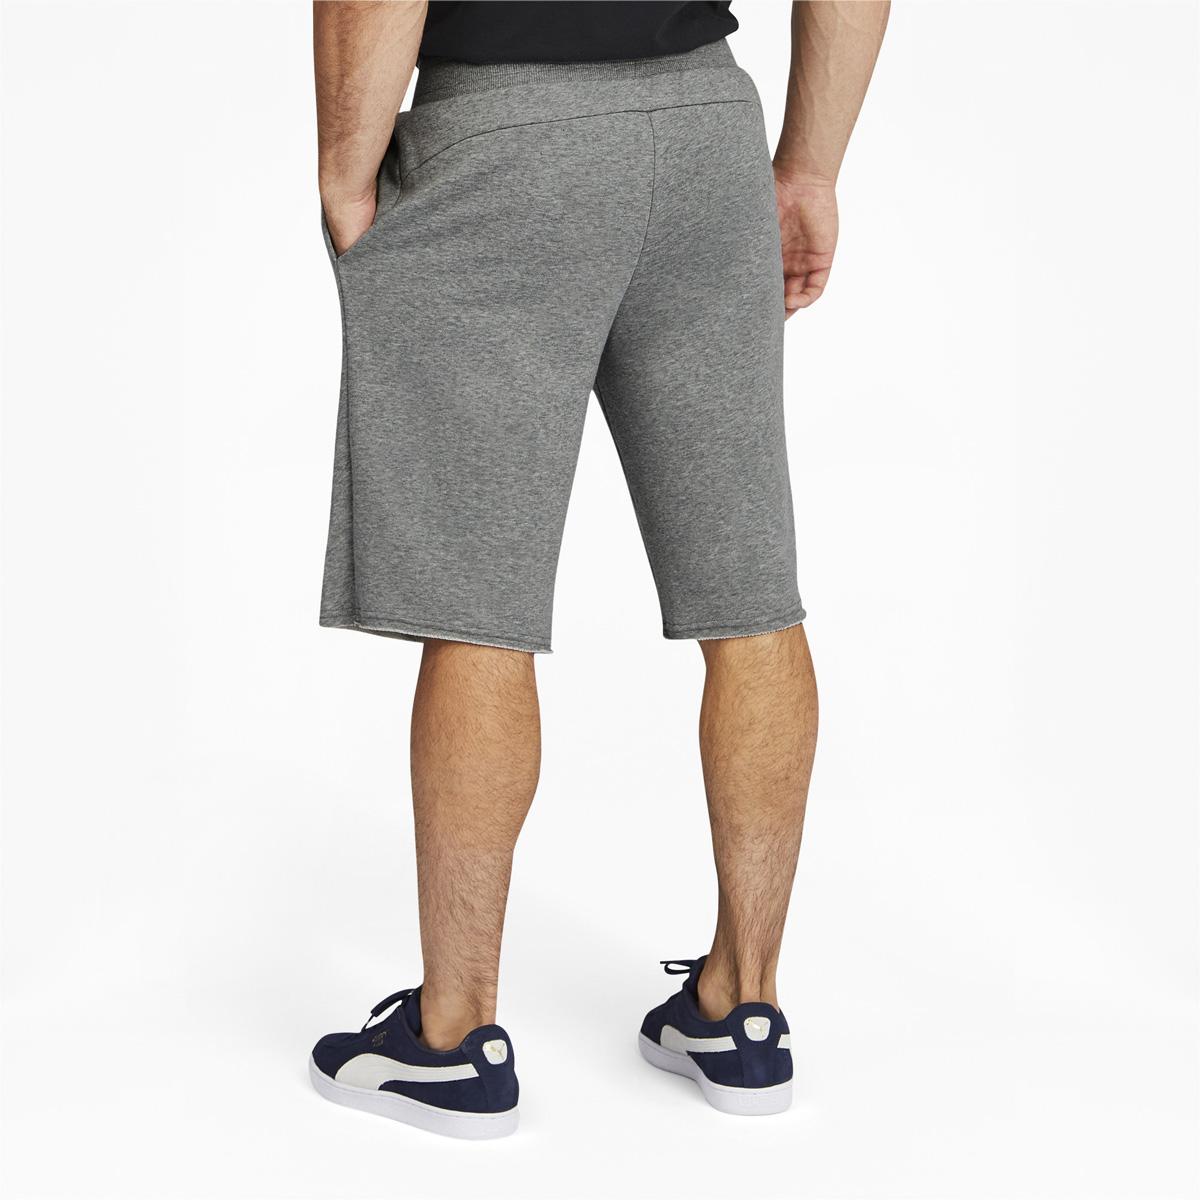 Puma Mens Essentials Shorts for $10.39 Shipped